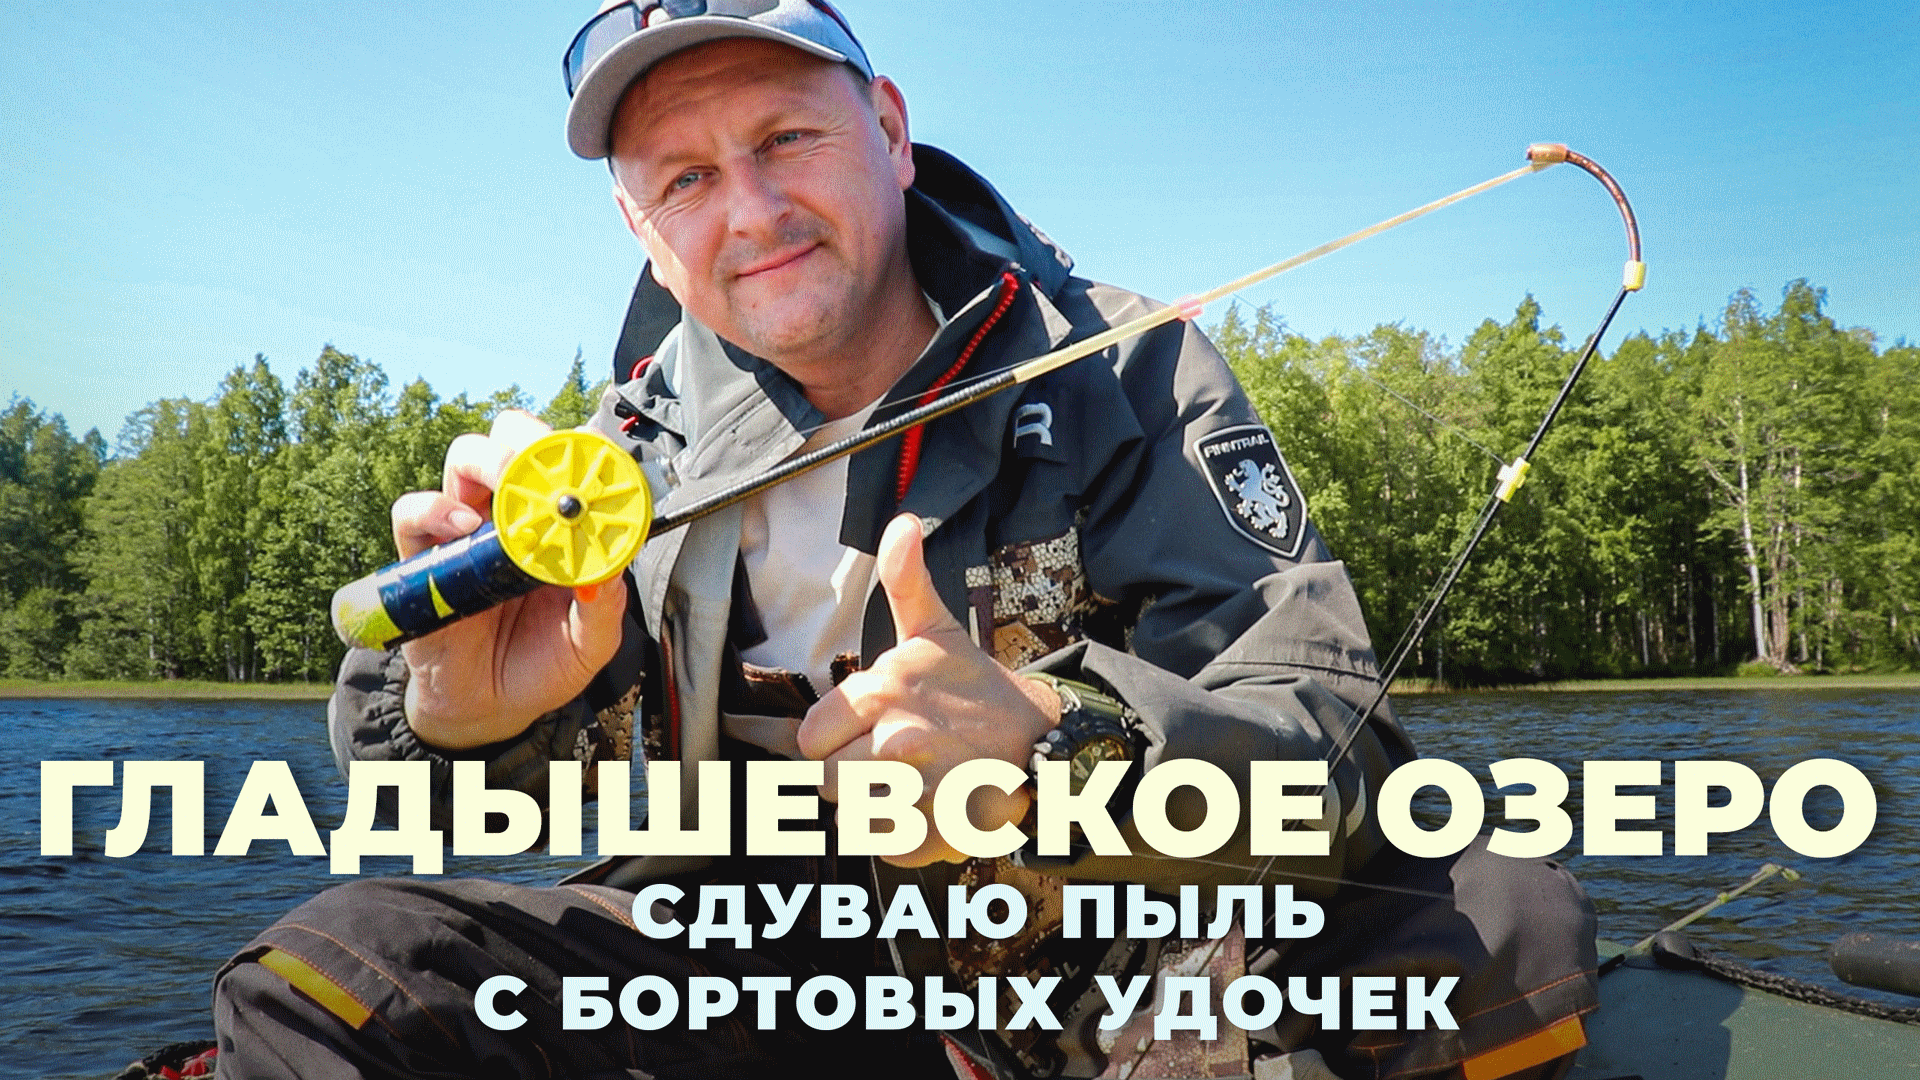 Гладышевское озеро - Рыбалка на бортовые удочки BROKEN-TIP